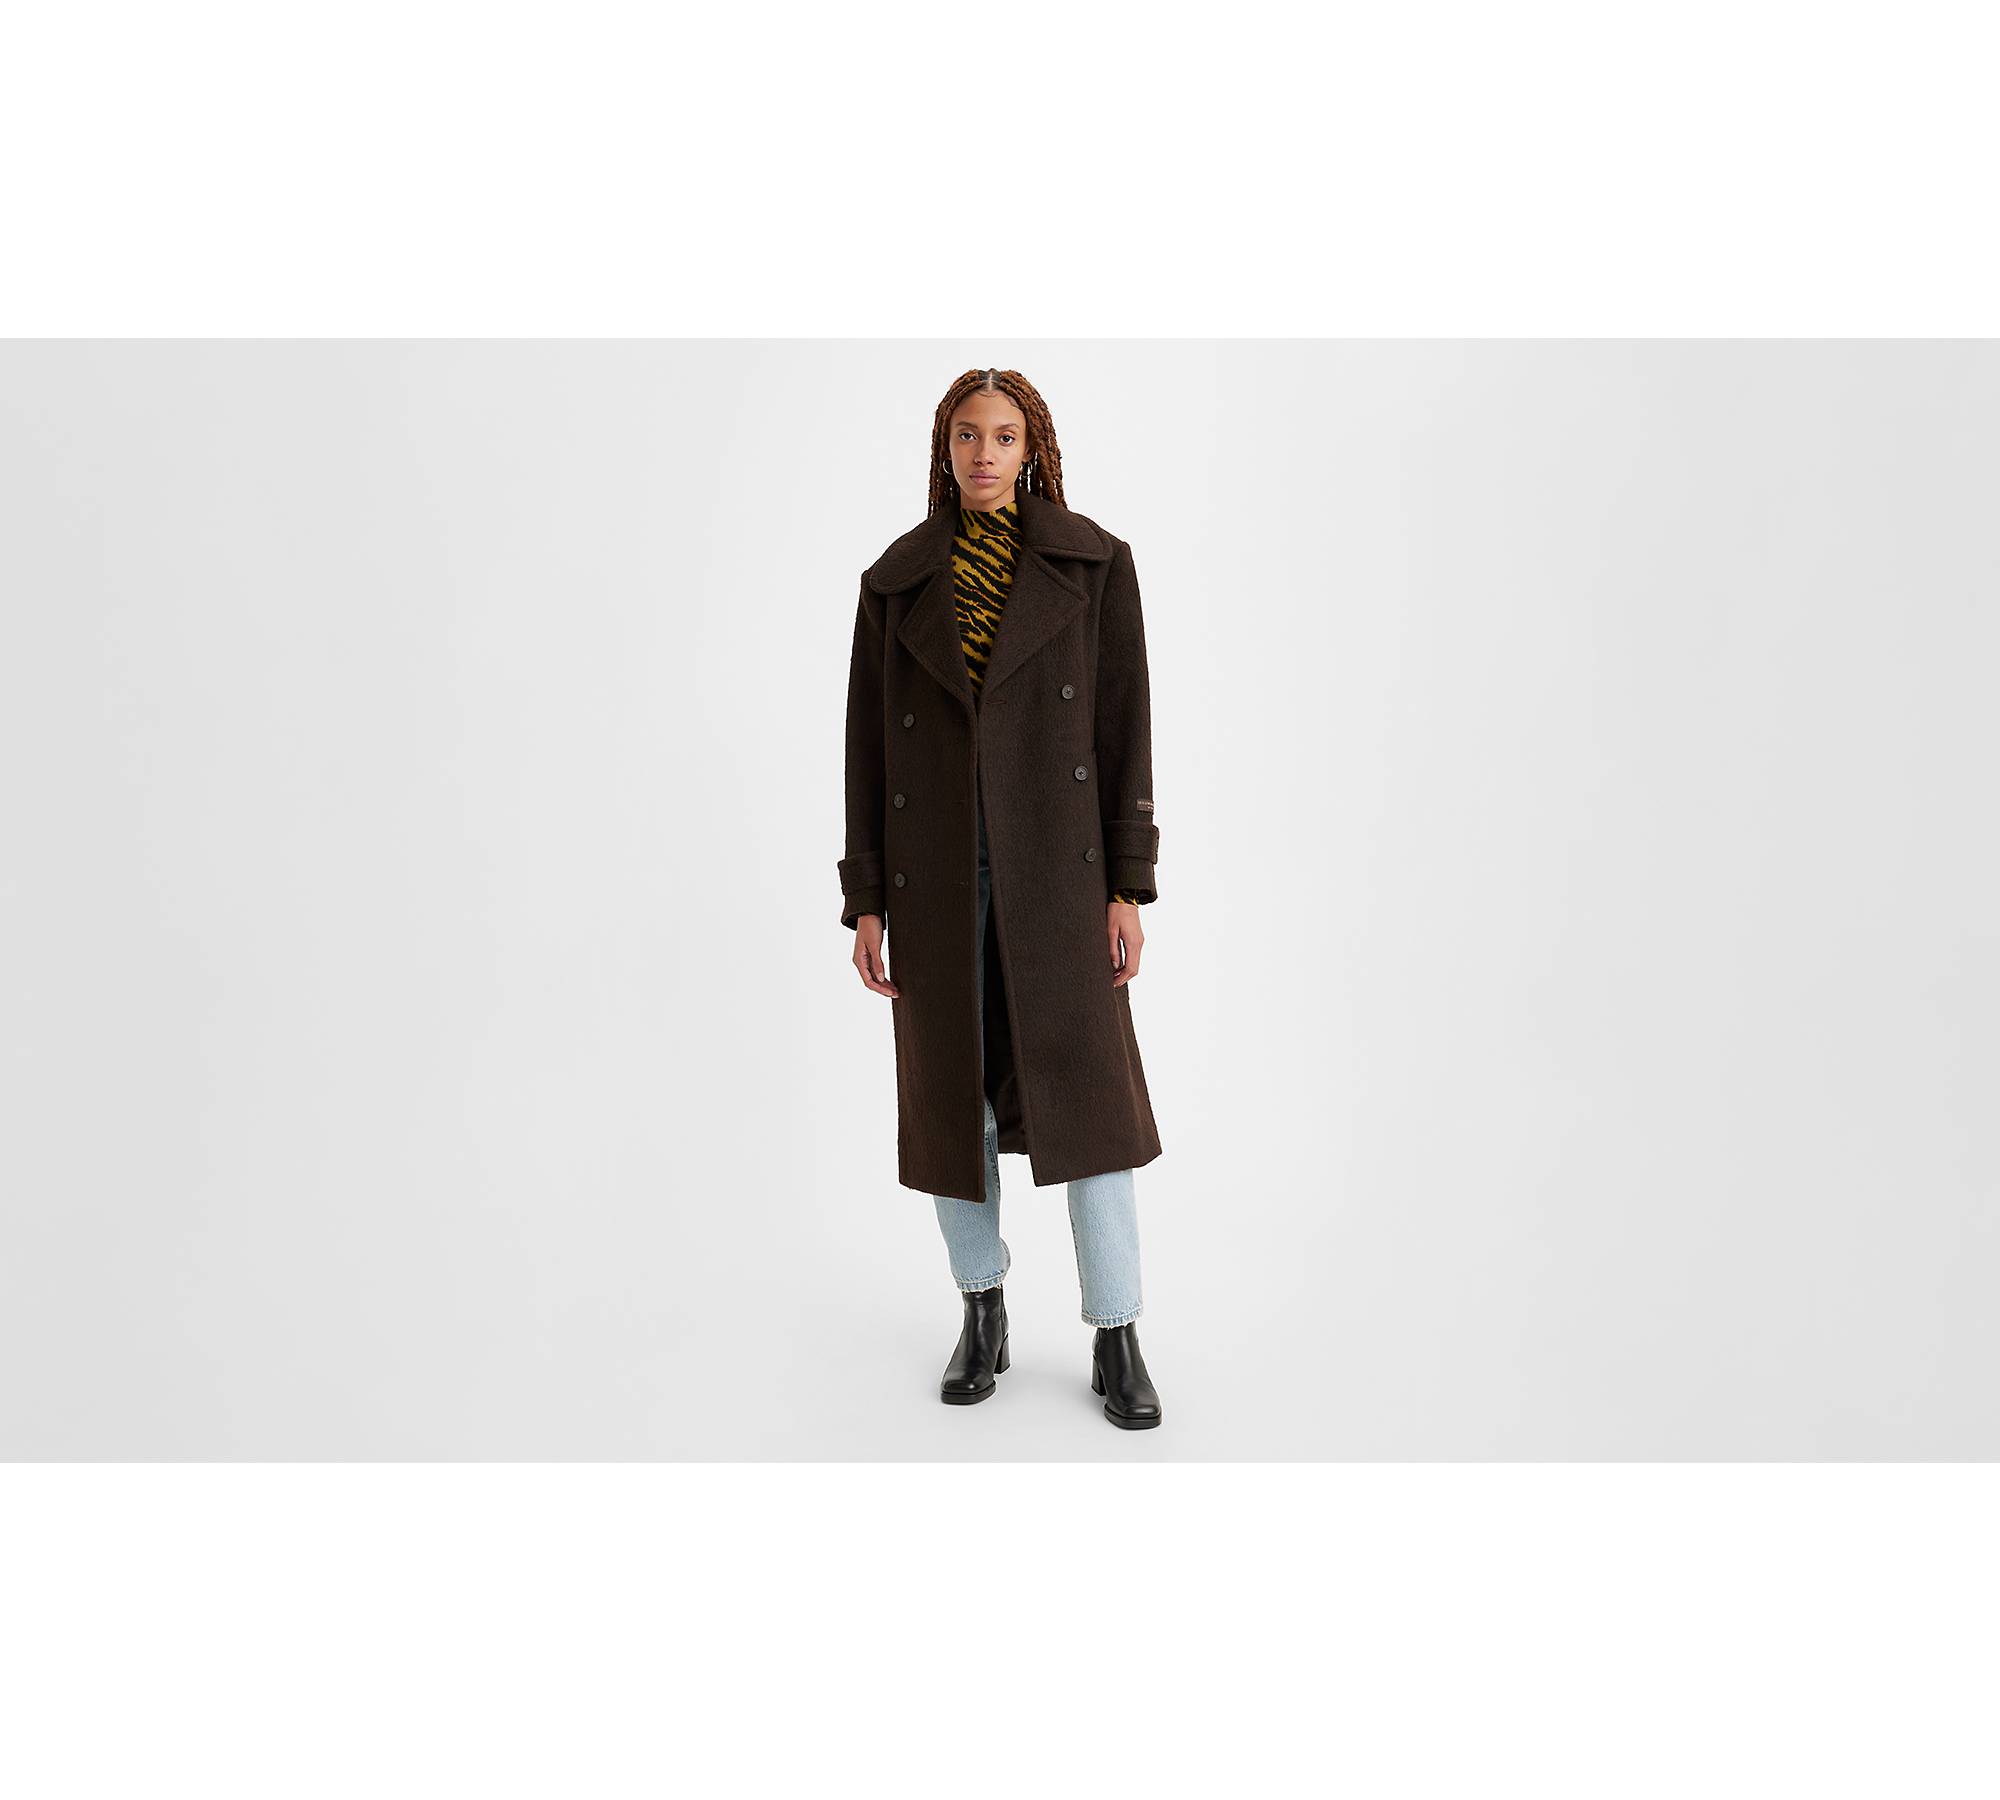 Plaid Wool Coat, Size Medium M, Red Short Jacket, Wool Blend Coat, Retro  Jacket, Short Coat, 70s Vintage Clothing, Womens Clothing -  Canada